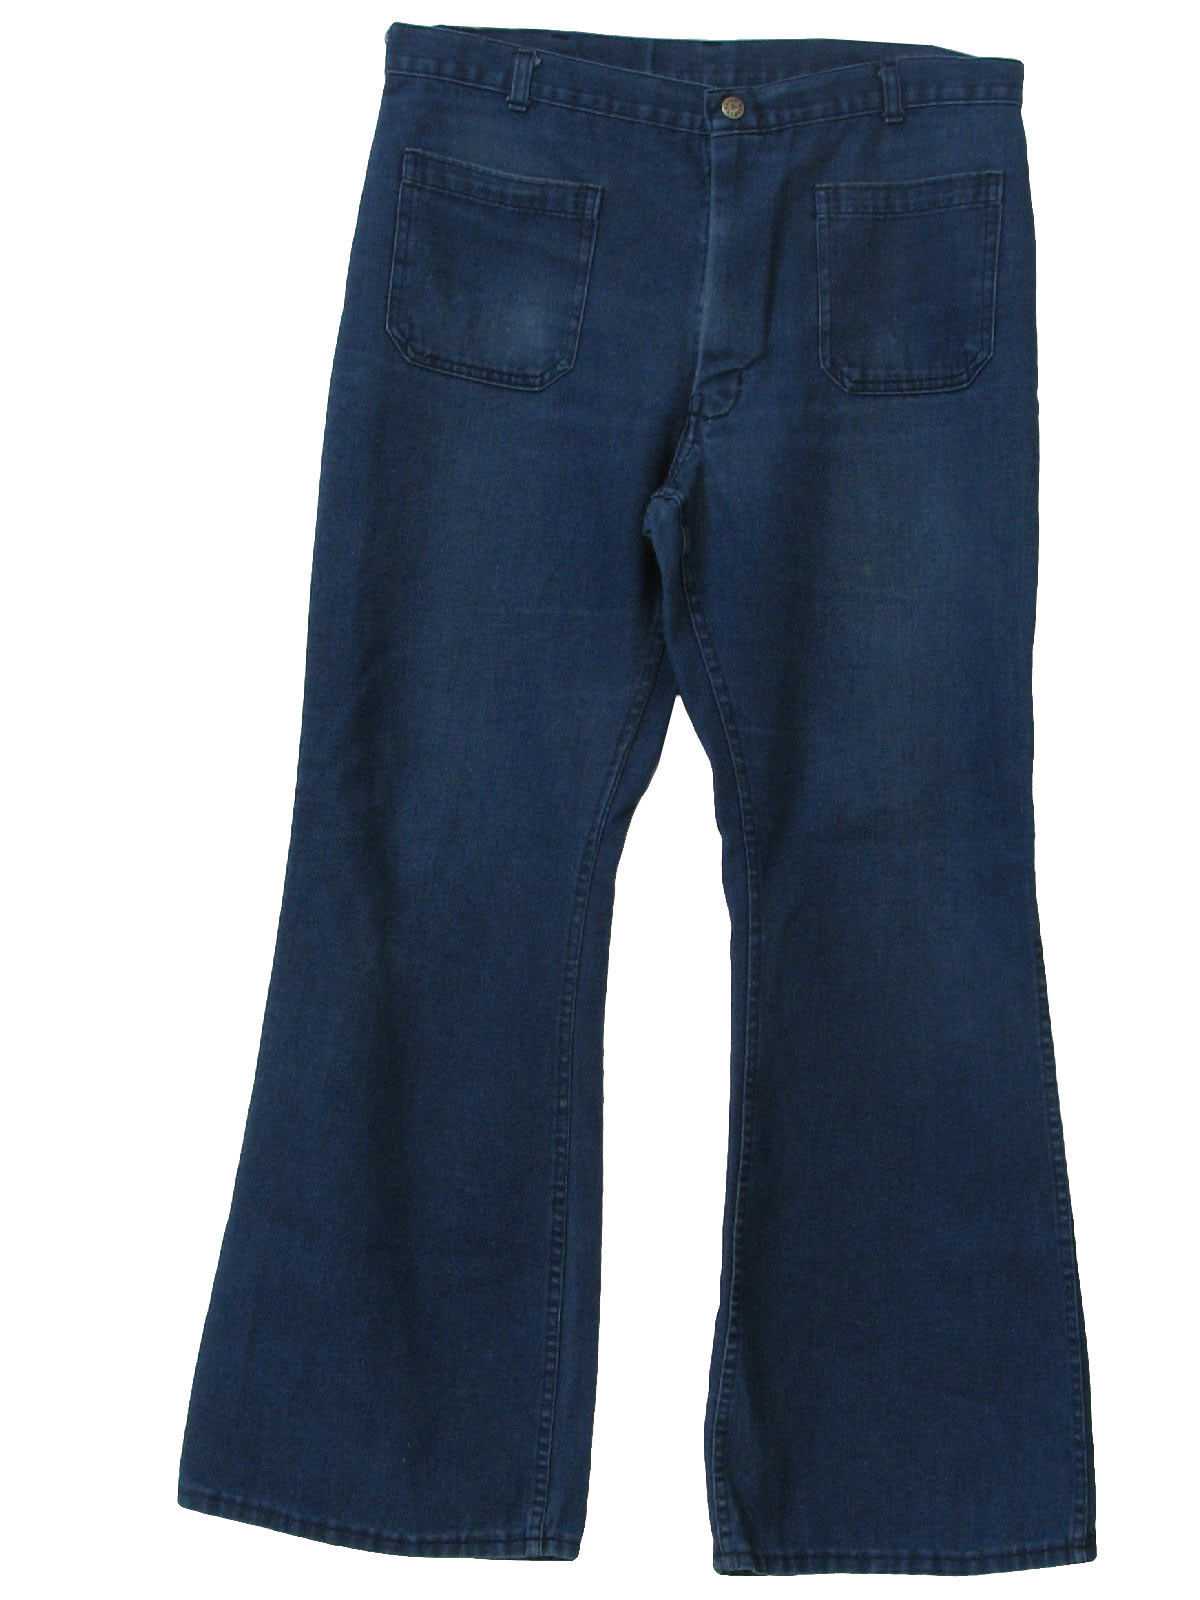 Vintage Seafarer 70's Bellbottom Pants: 70s -Seafarer- Mens blue cotton ...